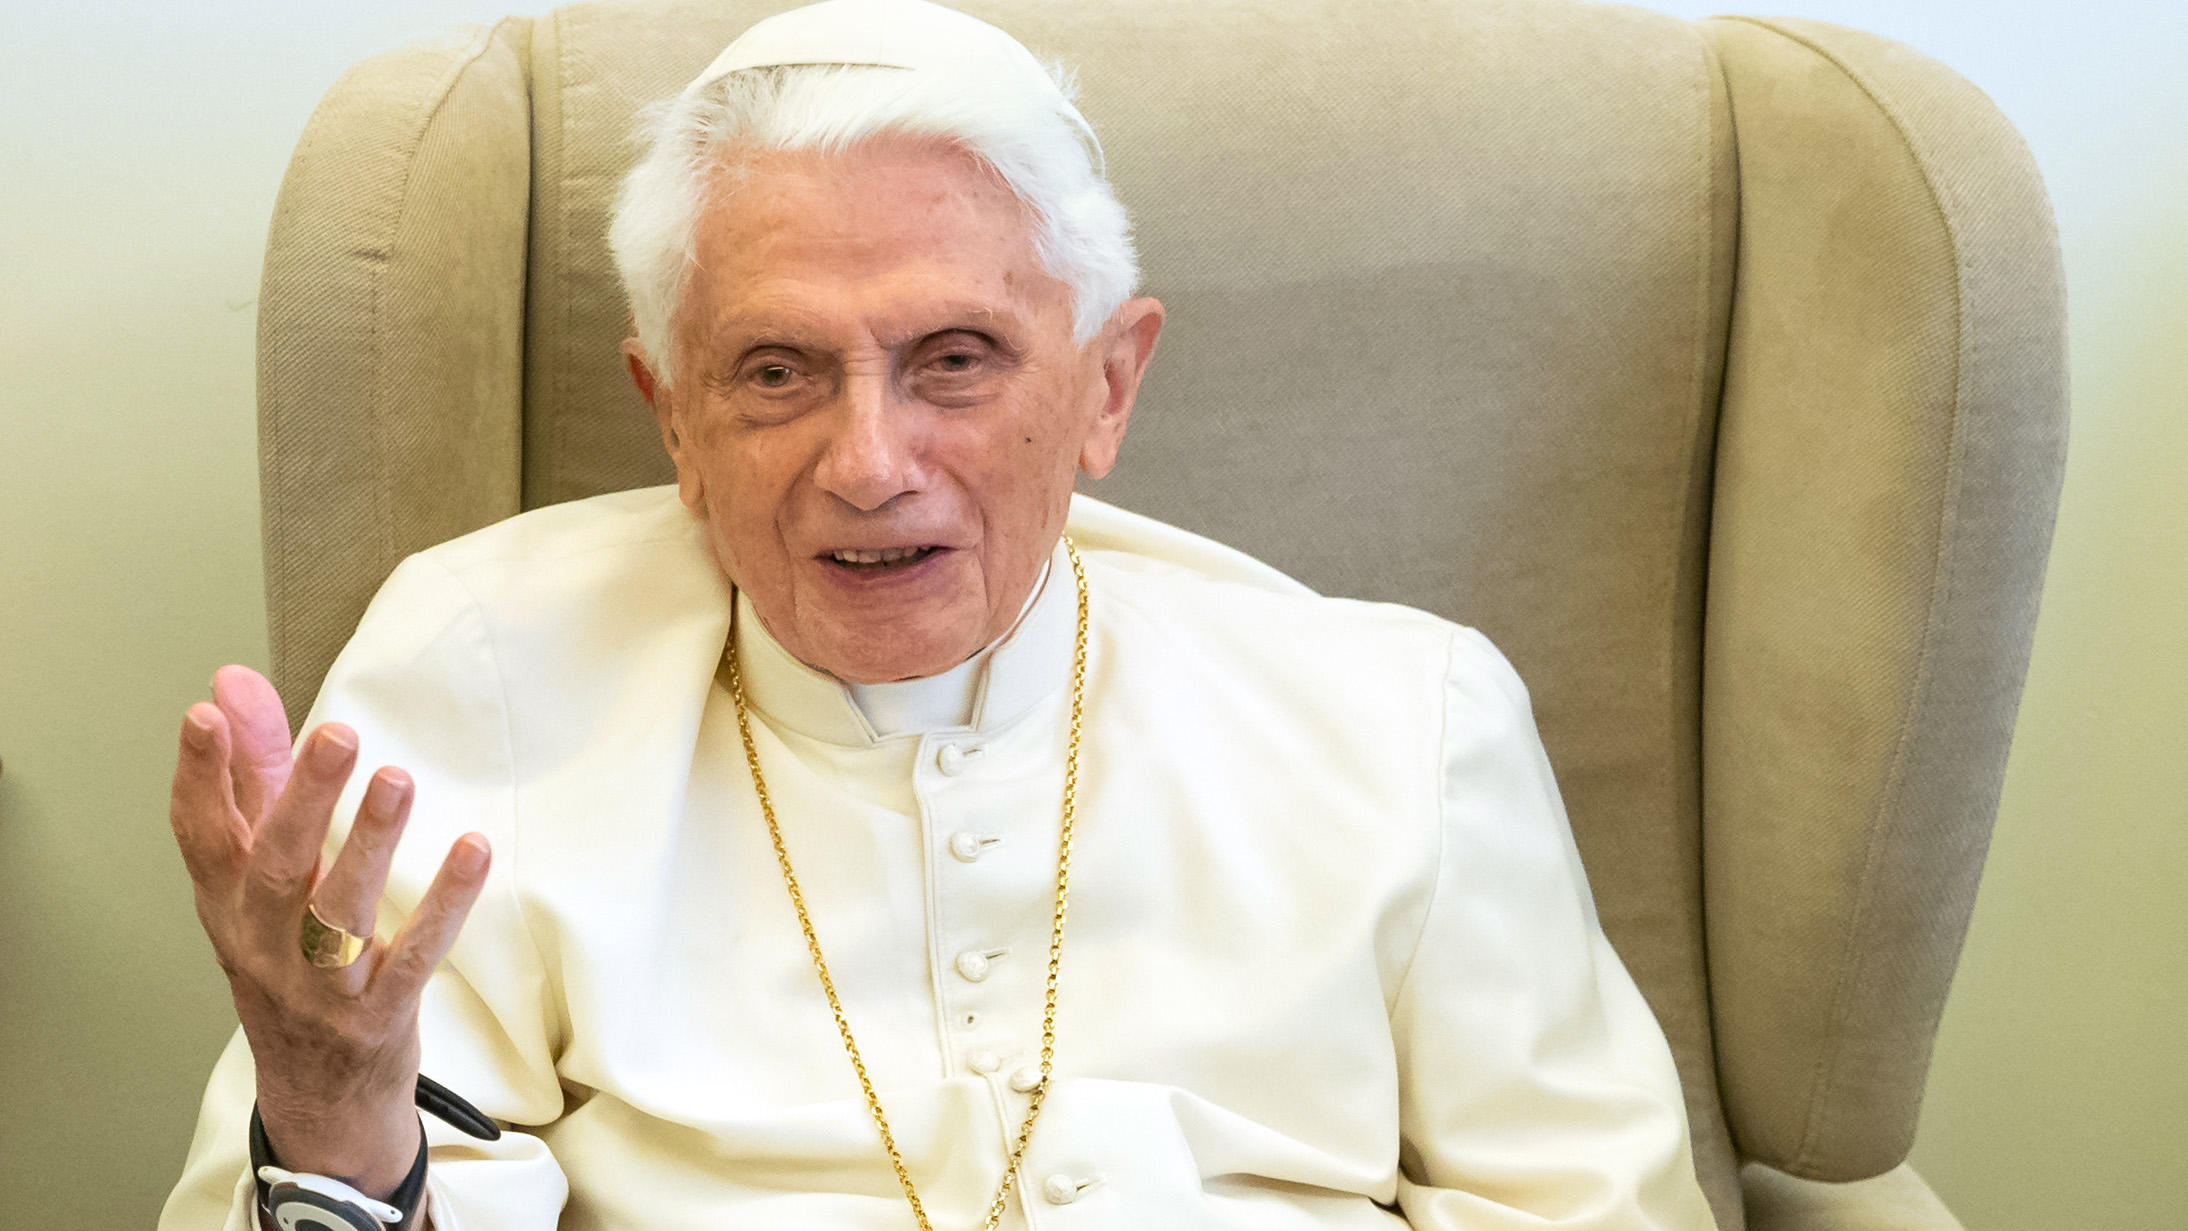 ARCHIV - 01.06.2018, Vatikan, Vatikanstadt: Der emeritierte Papst Benedikt XVI gibt ein Interview. Der emeritierte Papst Benedikt XVI. hat eingeräumt, bei seiner Stellungnahme für das Missbrauchsgutachten des Erzbistums München und Freising eine fals